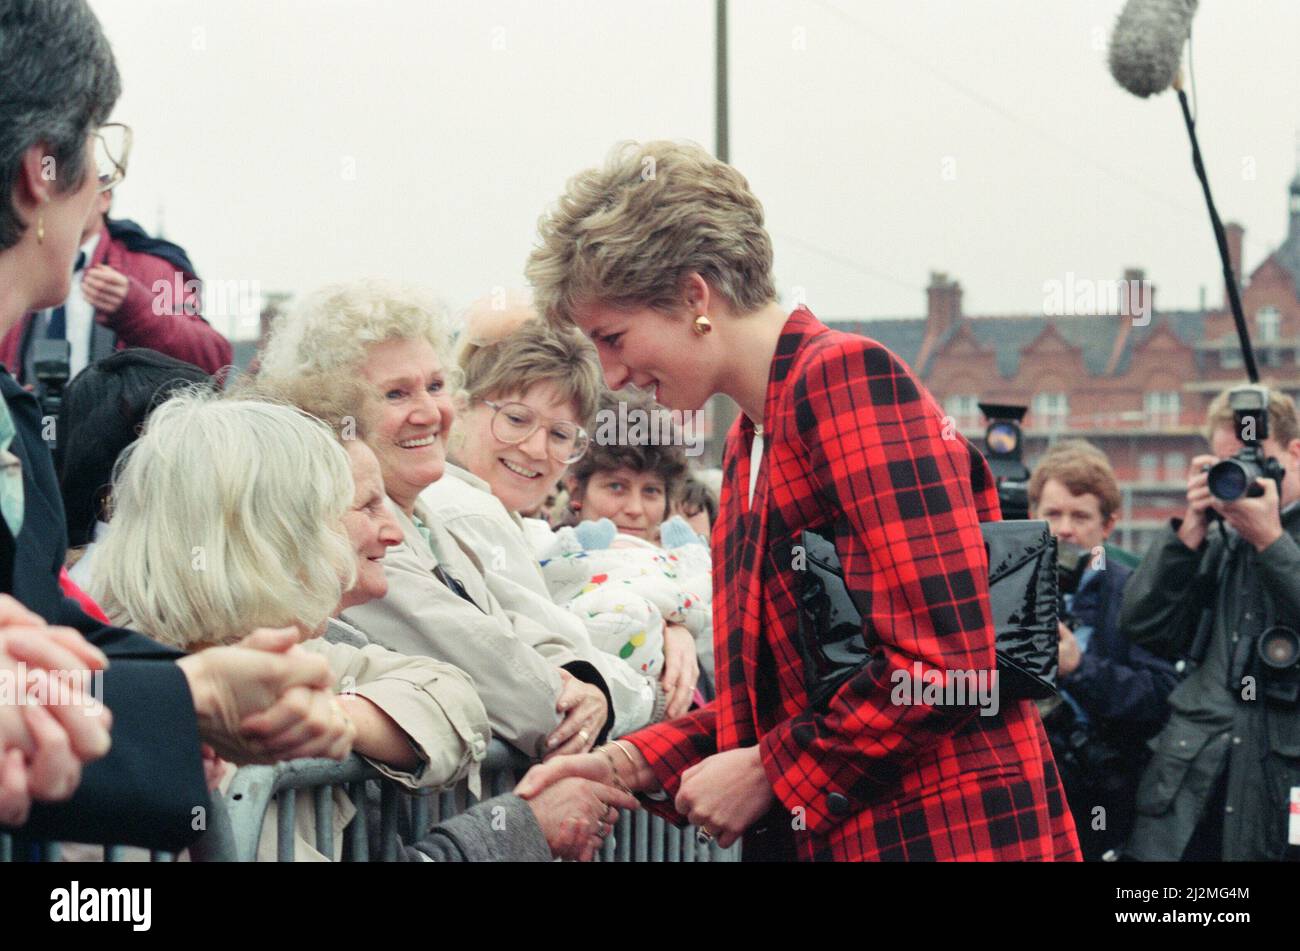 Ihre Königliche Hoheit Prinzessin Diana, in Tartan gekleidet, auf einem Spaziergang in Manchester. Sehen Sie sich weitere Mirrorpix-Bilder des Fotografen Andy Stenning an, wo sie am selben Tag die Manchester Art Gallery in der Moseley Street besuchte. Prinz Charles war ebenfalls zu Besuch, aber bei dieser Gelegenheit nicht in Schuss. Bild aufgenommen am 12.. März 1991 Stockfoto